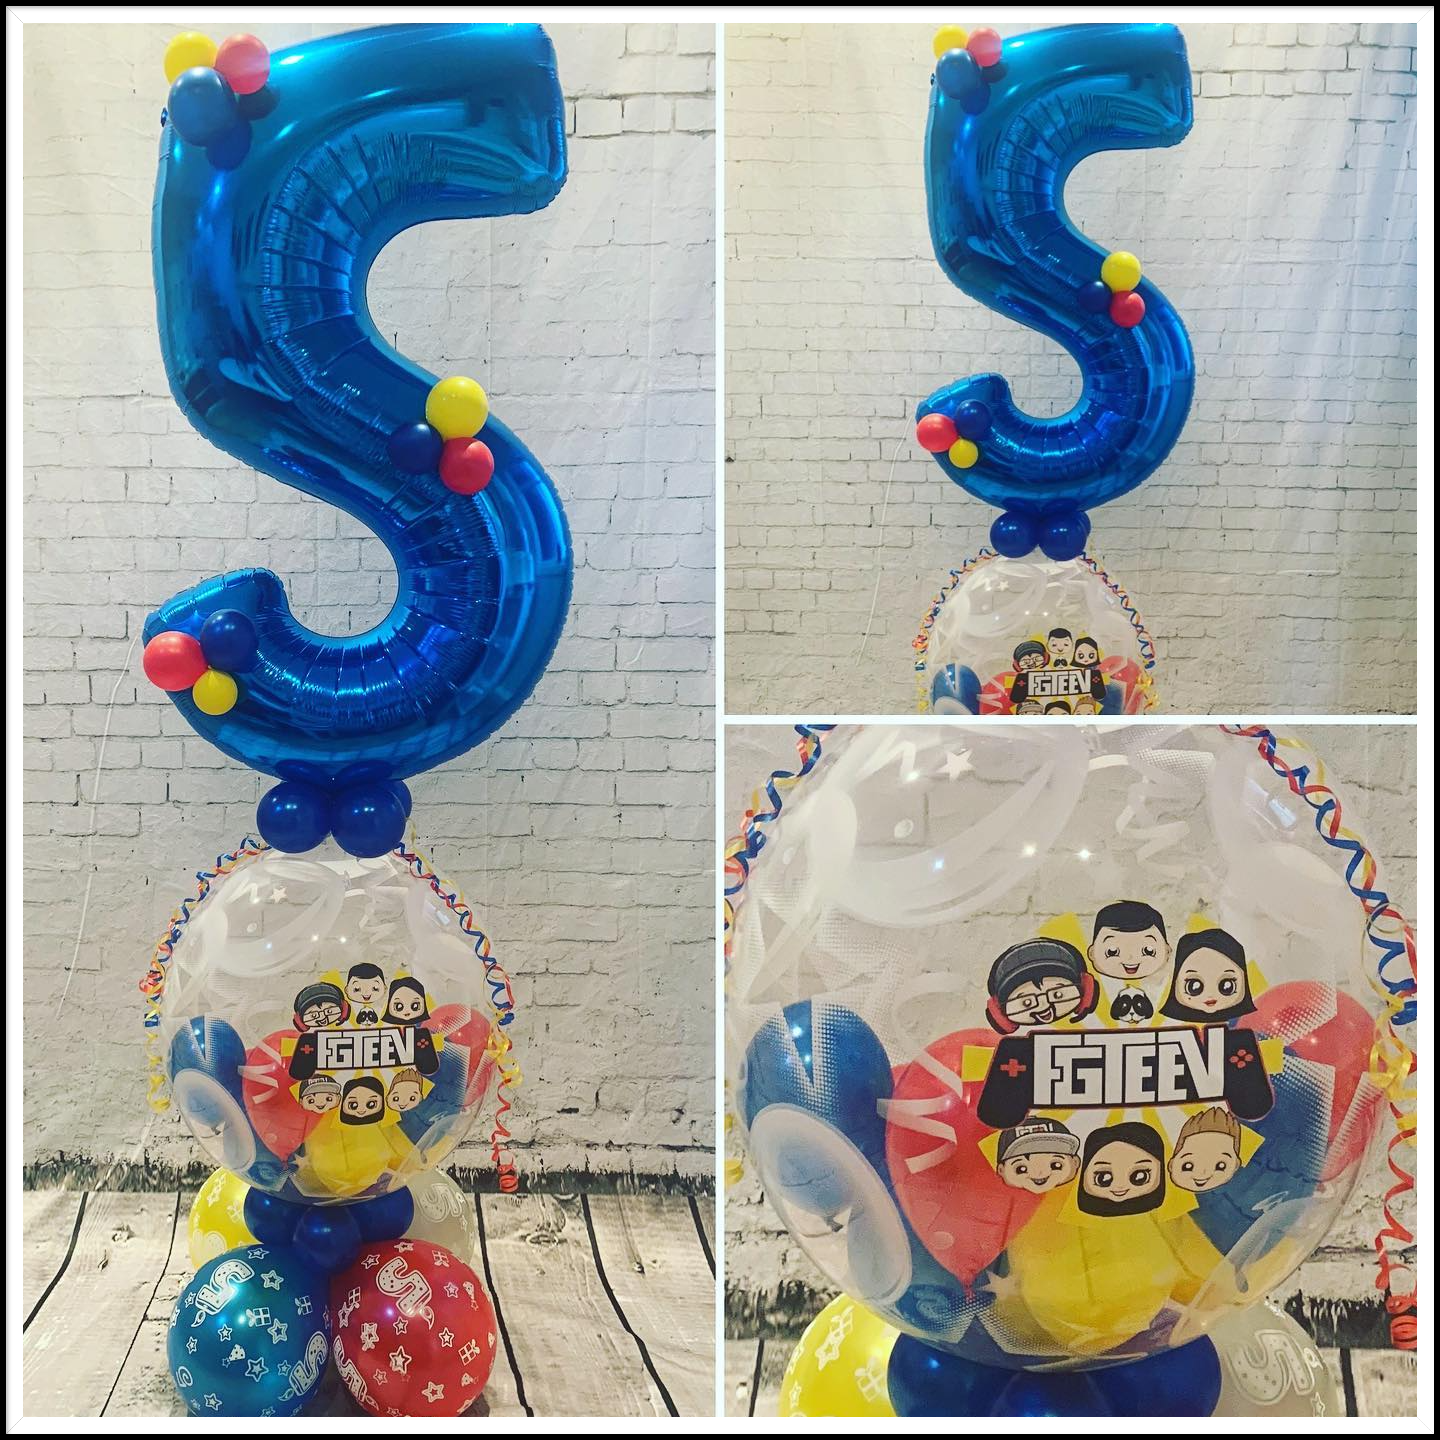 FGTEEV themed balloon